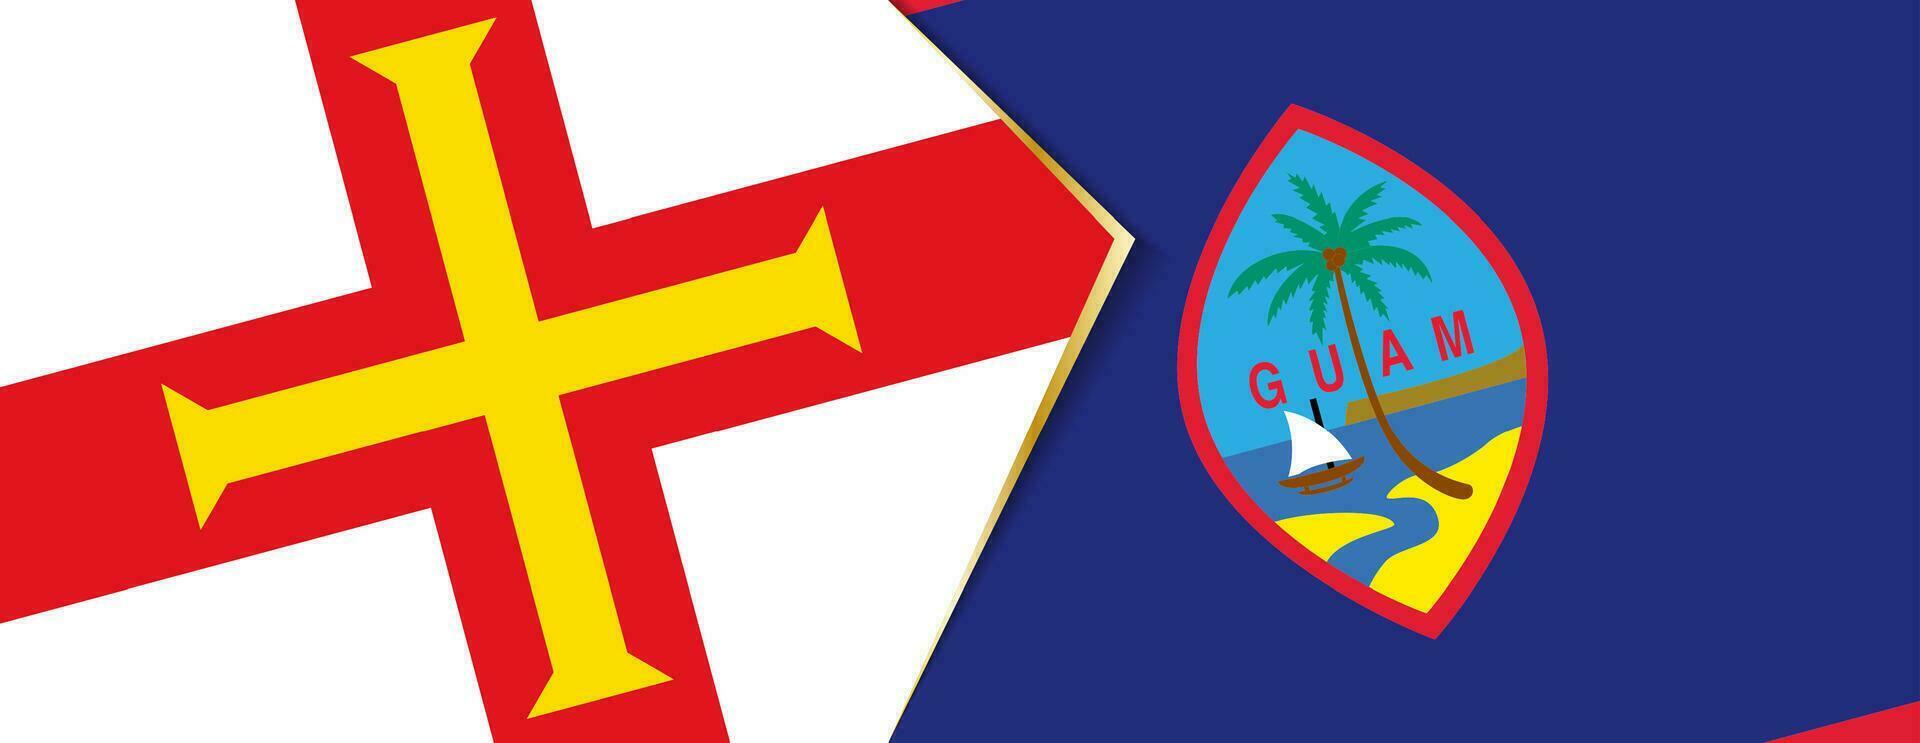 maglione e Guami bandiere, Due vettore bandiere.